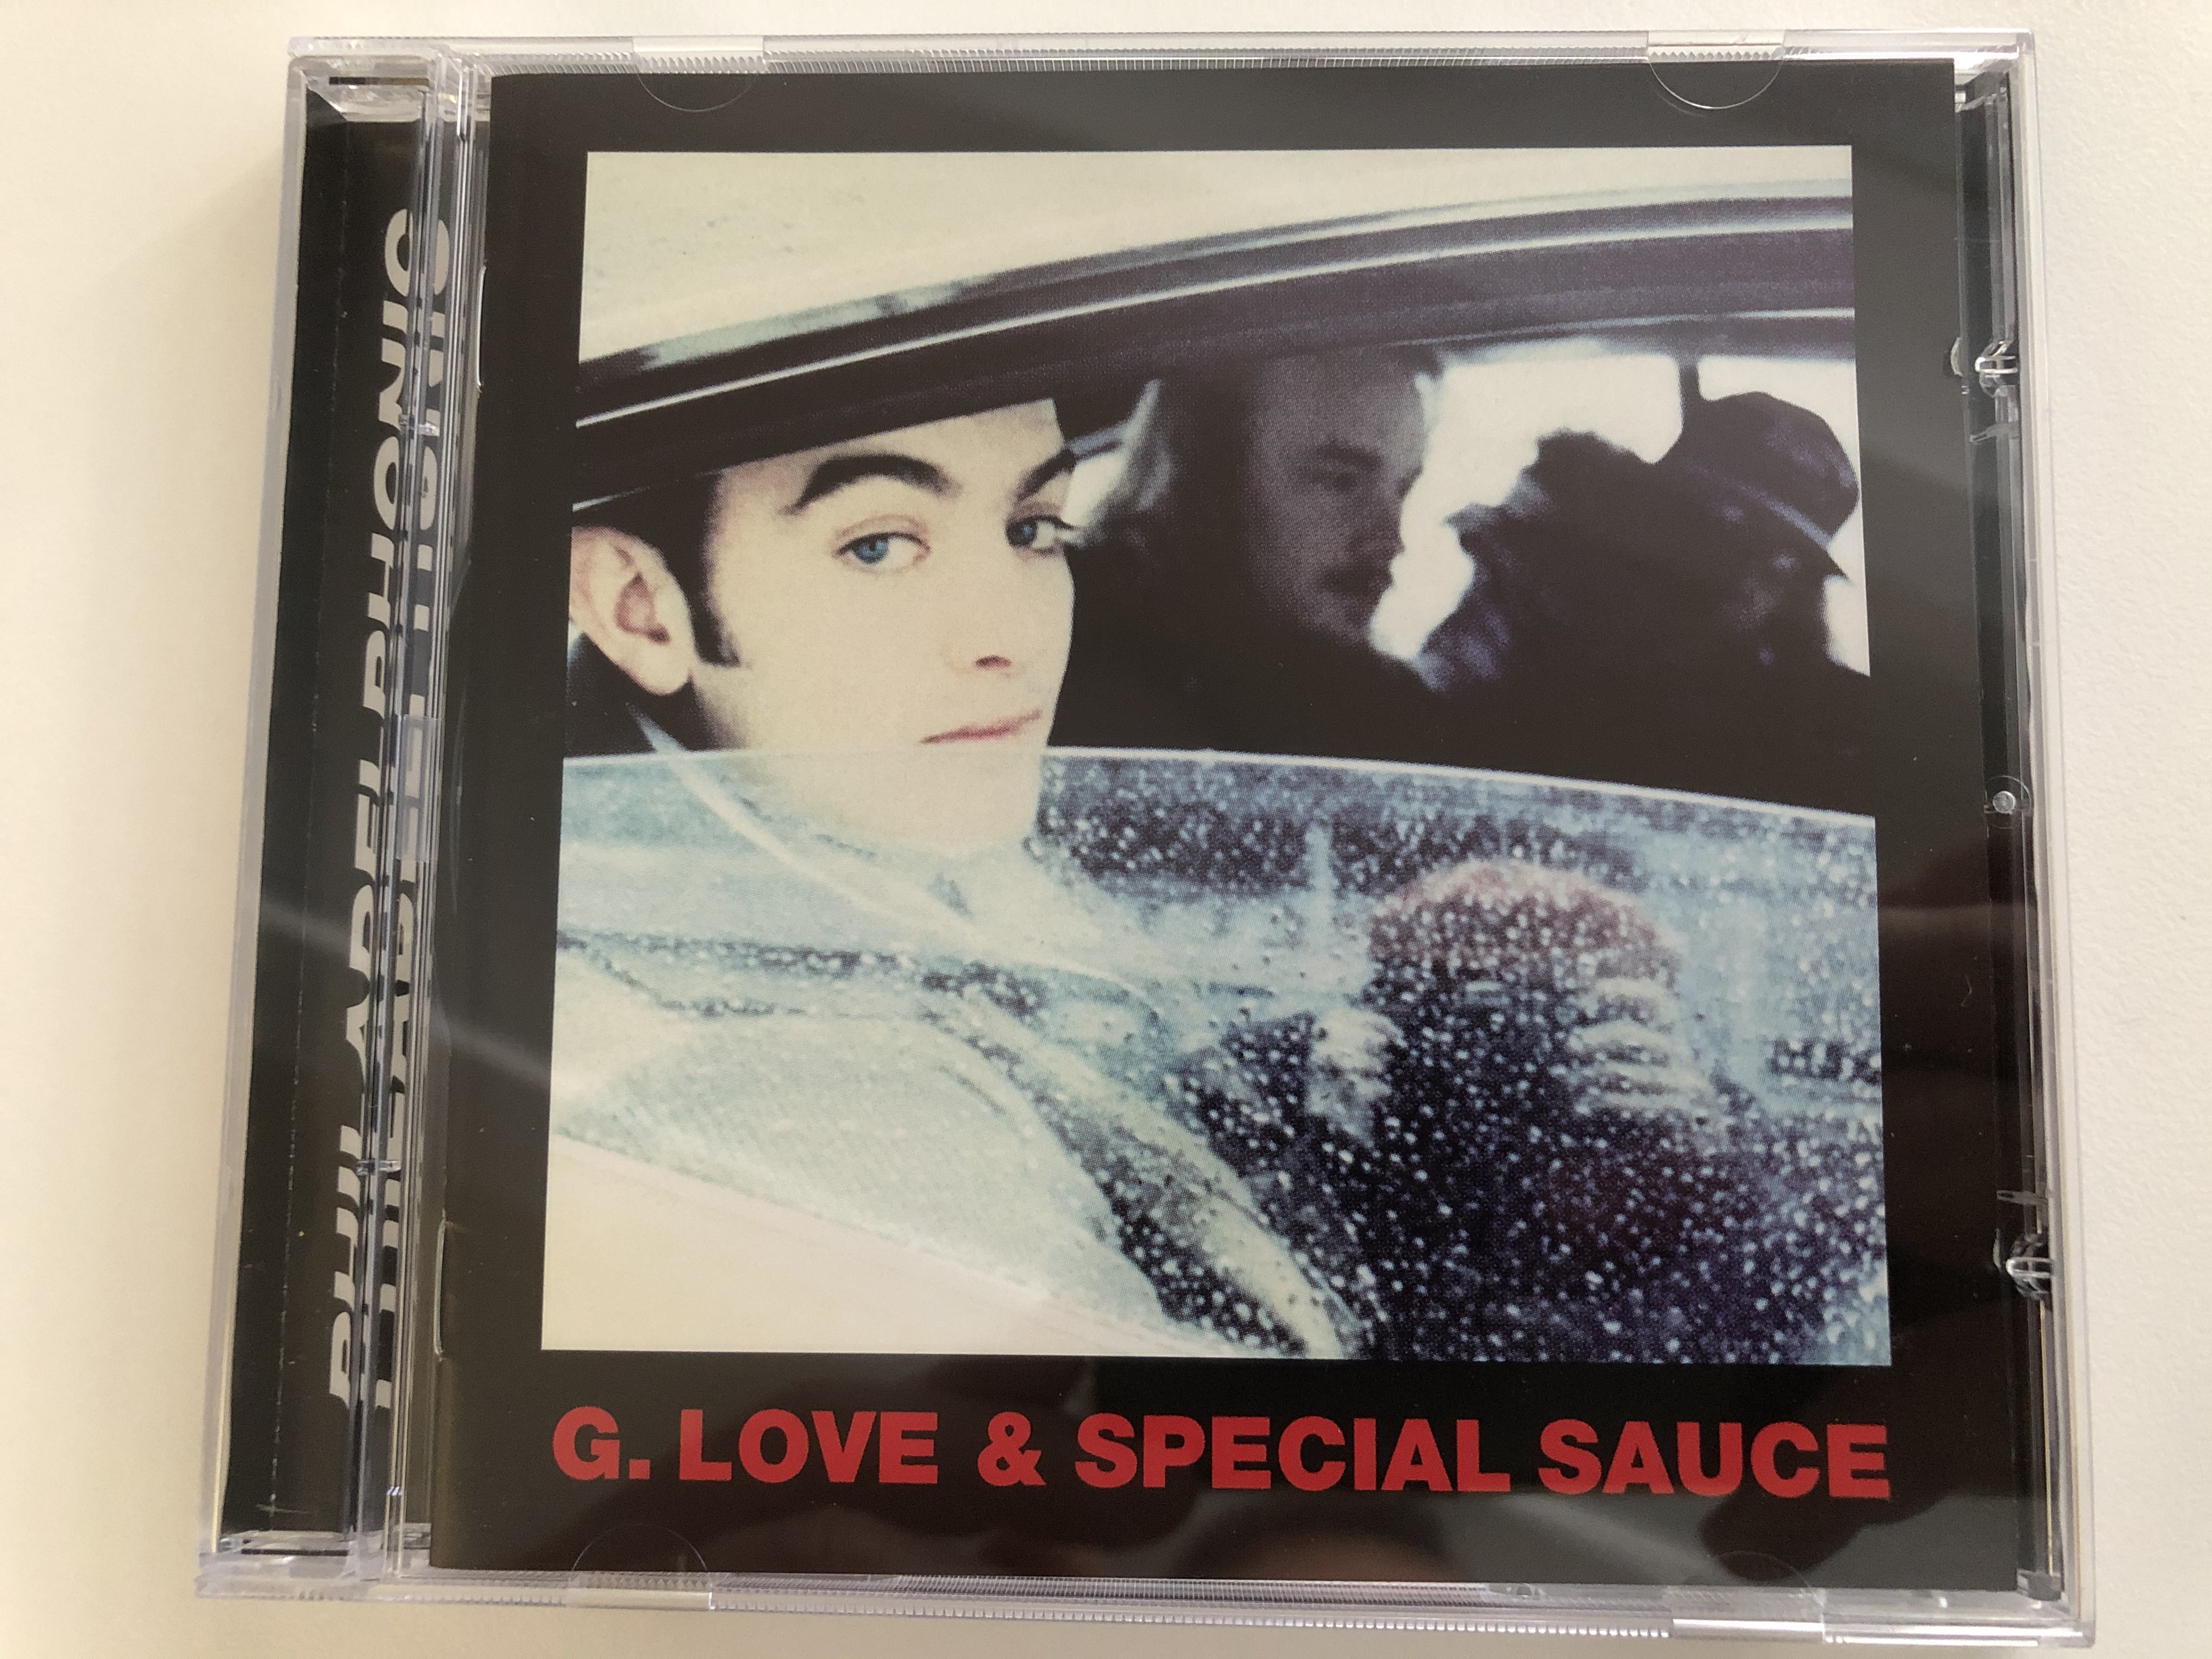 g.-love-special-sauce-philadelphonic-okeh-audio-cd-1999-493310-2-1-.jpg